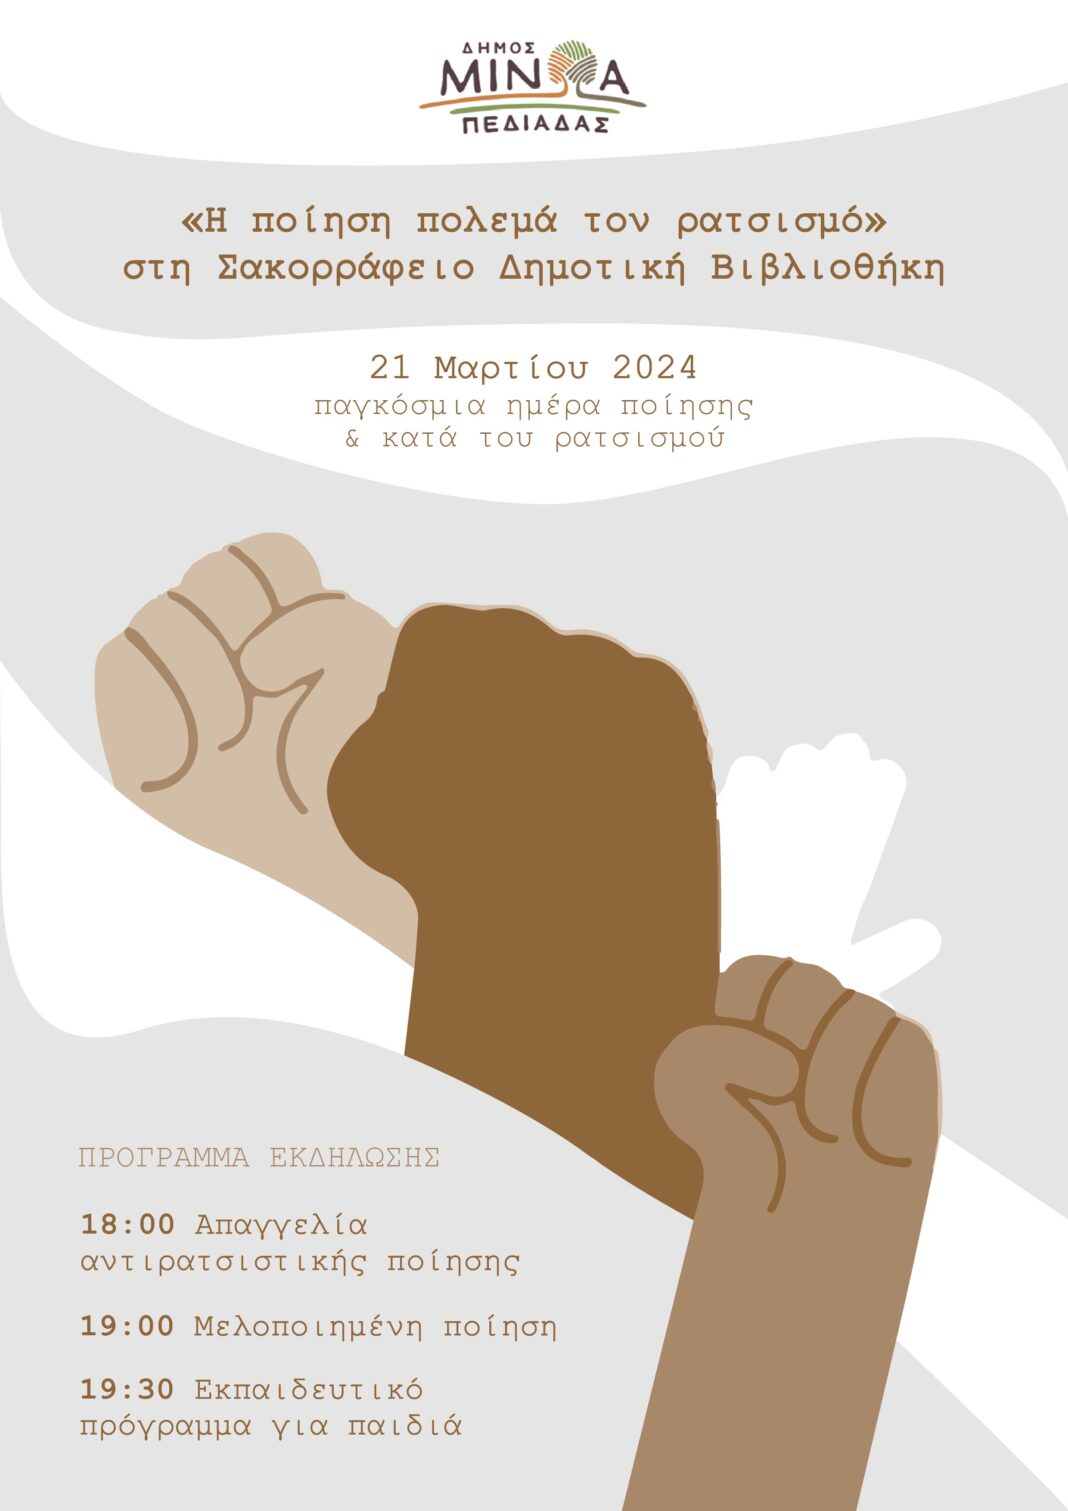 «Η ποίηση πολεμά τον ρατσισμό» στη Σακορράφειο Δημοτική Βιβλιοθήκη στο Καστέλλι- Την Πέμπτη 21 Μαρτίου στις 18:00